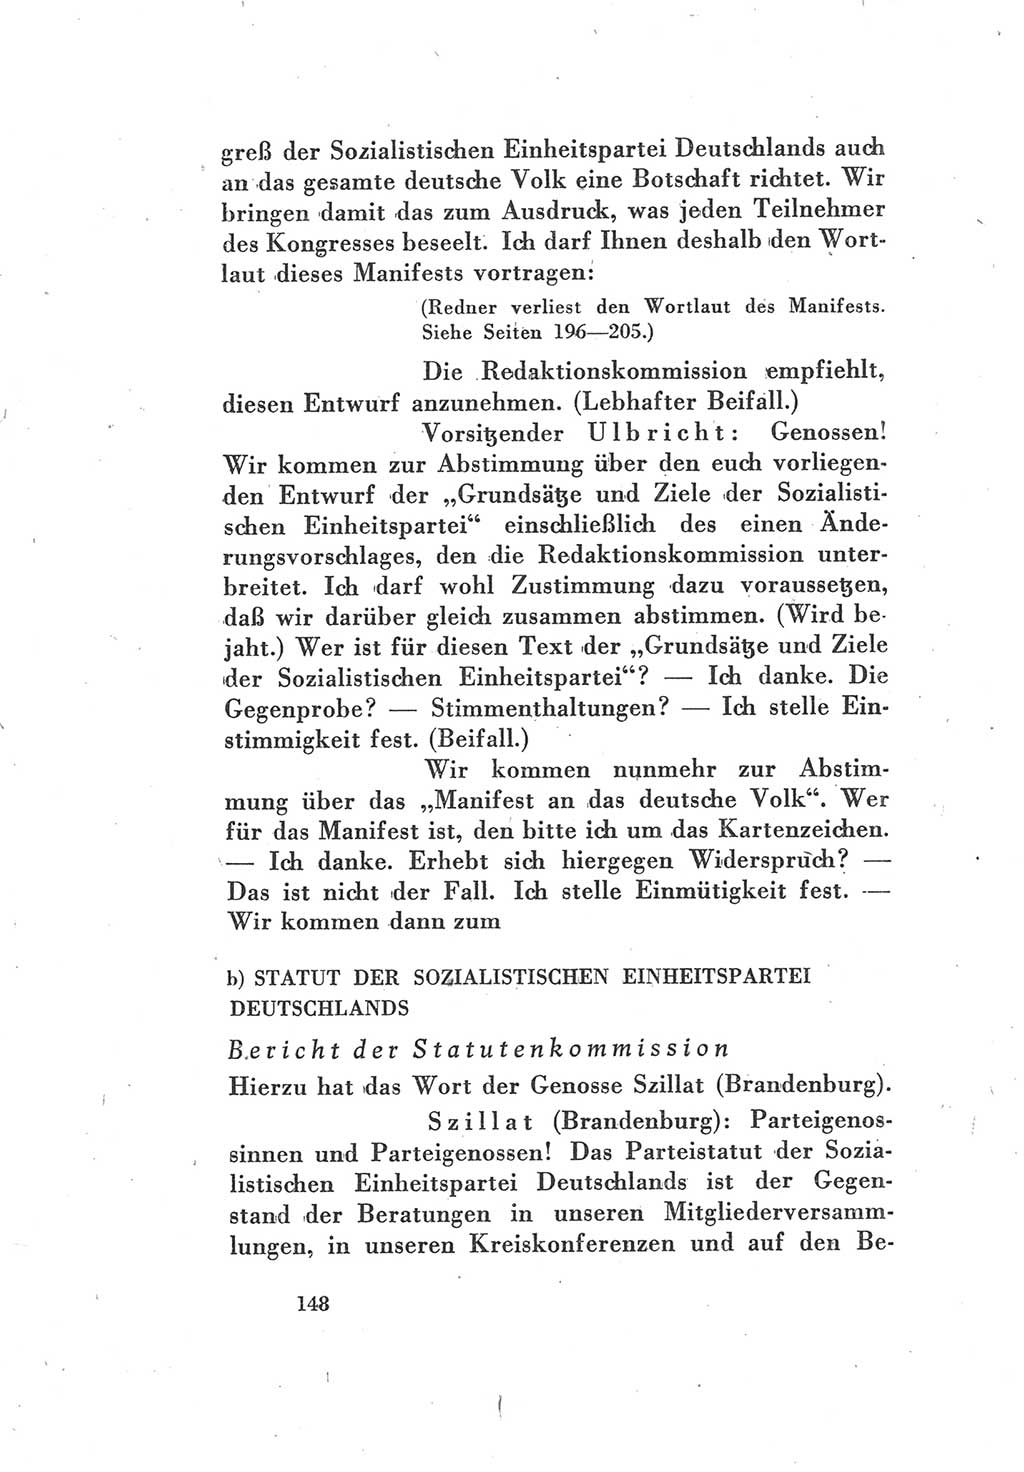 Protokoll des Vereinigungsparteitages der Sozialdemokratischen Partei Deutschlands (SPD) und der Kommunistischen Partei Deutschlands (KPD) [Sowjetische Besatzungszone (SBZ) Deutschlands] 1946, Seite 148 (Prot. VPT SPD KPD SBZ Dtl. 1946, S. 148)